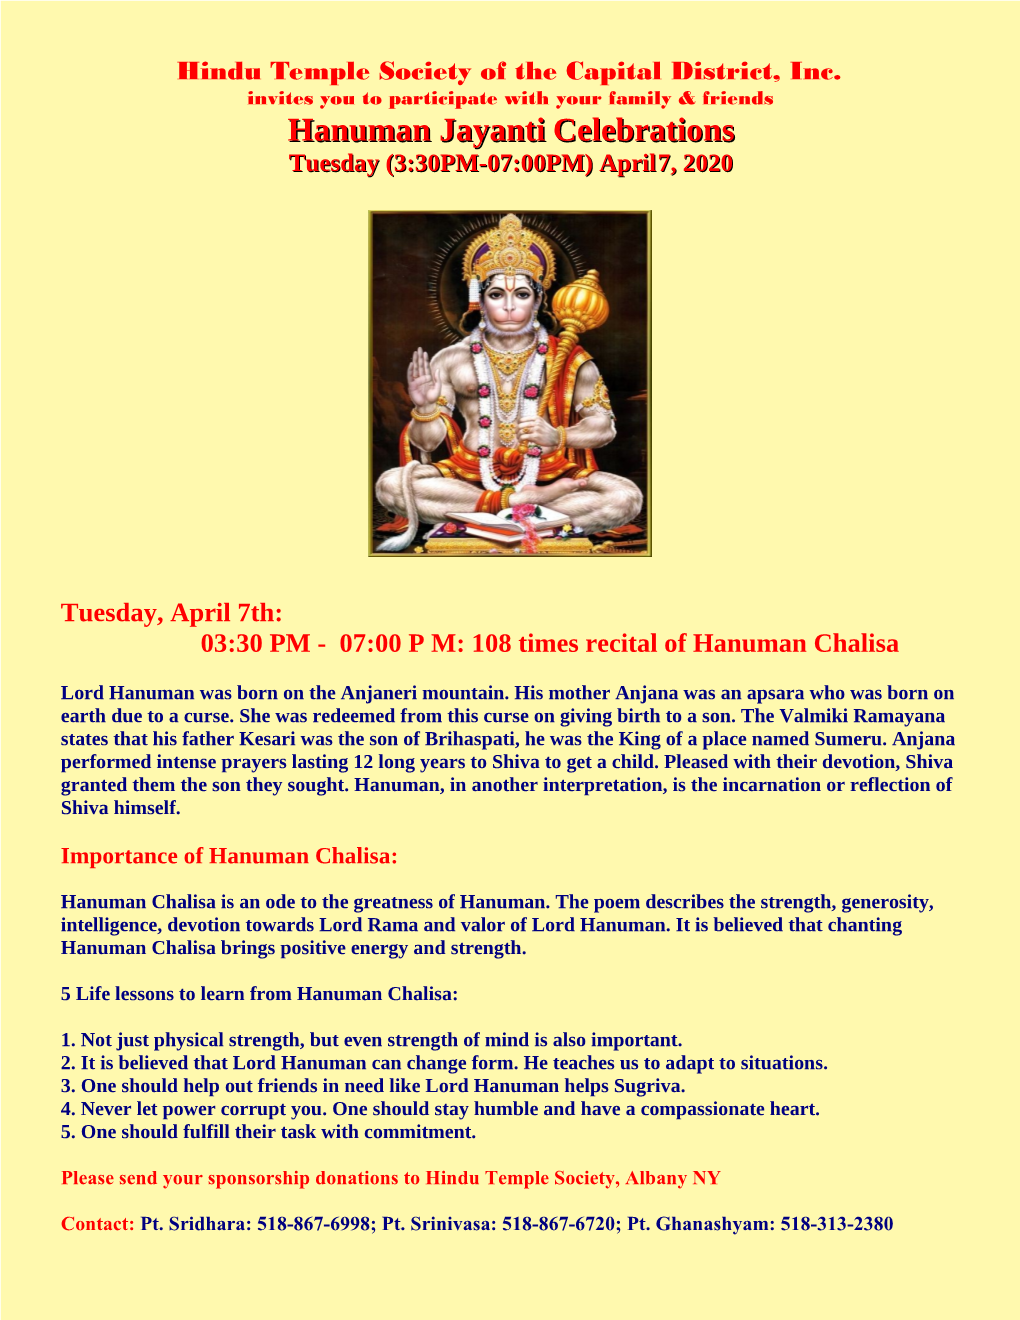 Hanuman Jayanti Celebrations Tuesday (3:30PM-07:00PM) April 7, 2020